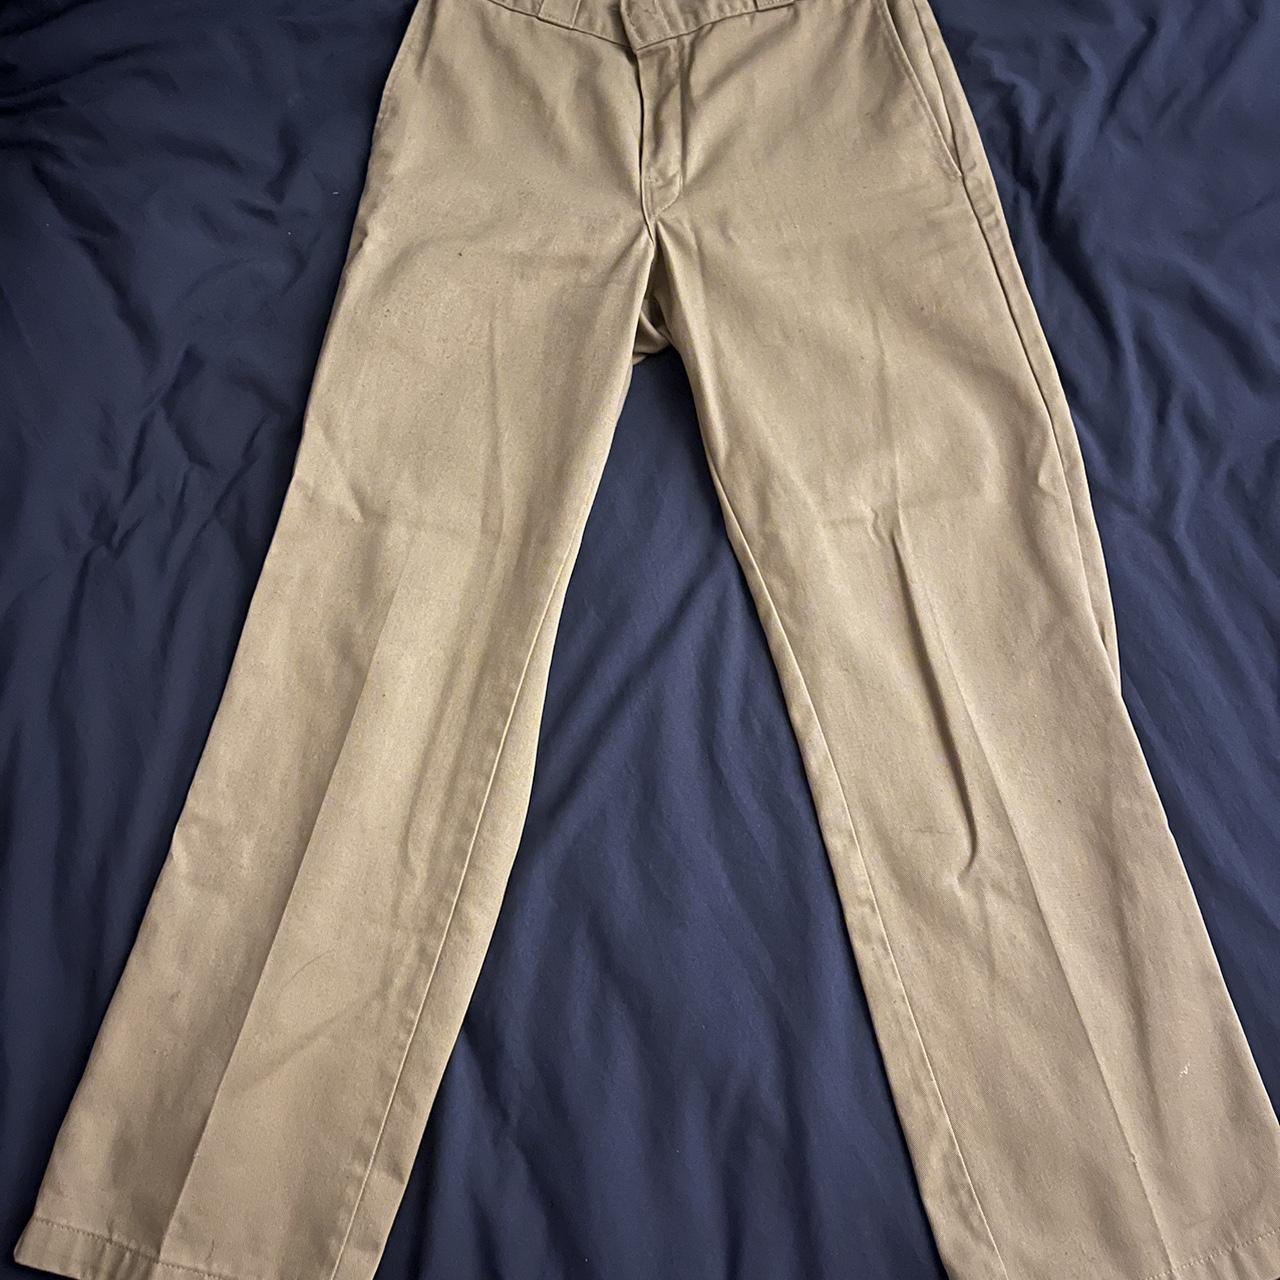 Vintage Dickies Mens Pants Minor flaws as shown in... - Depop